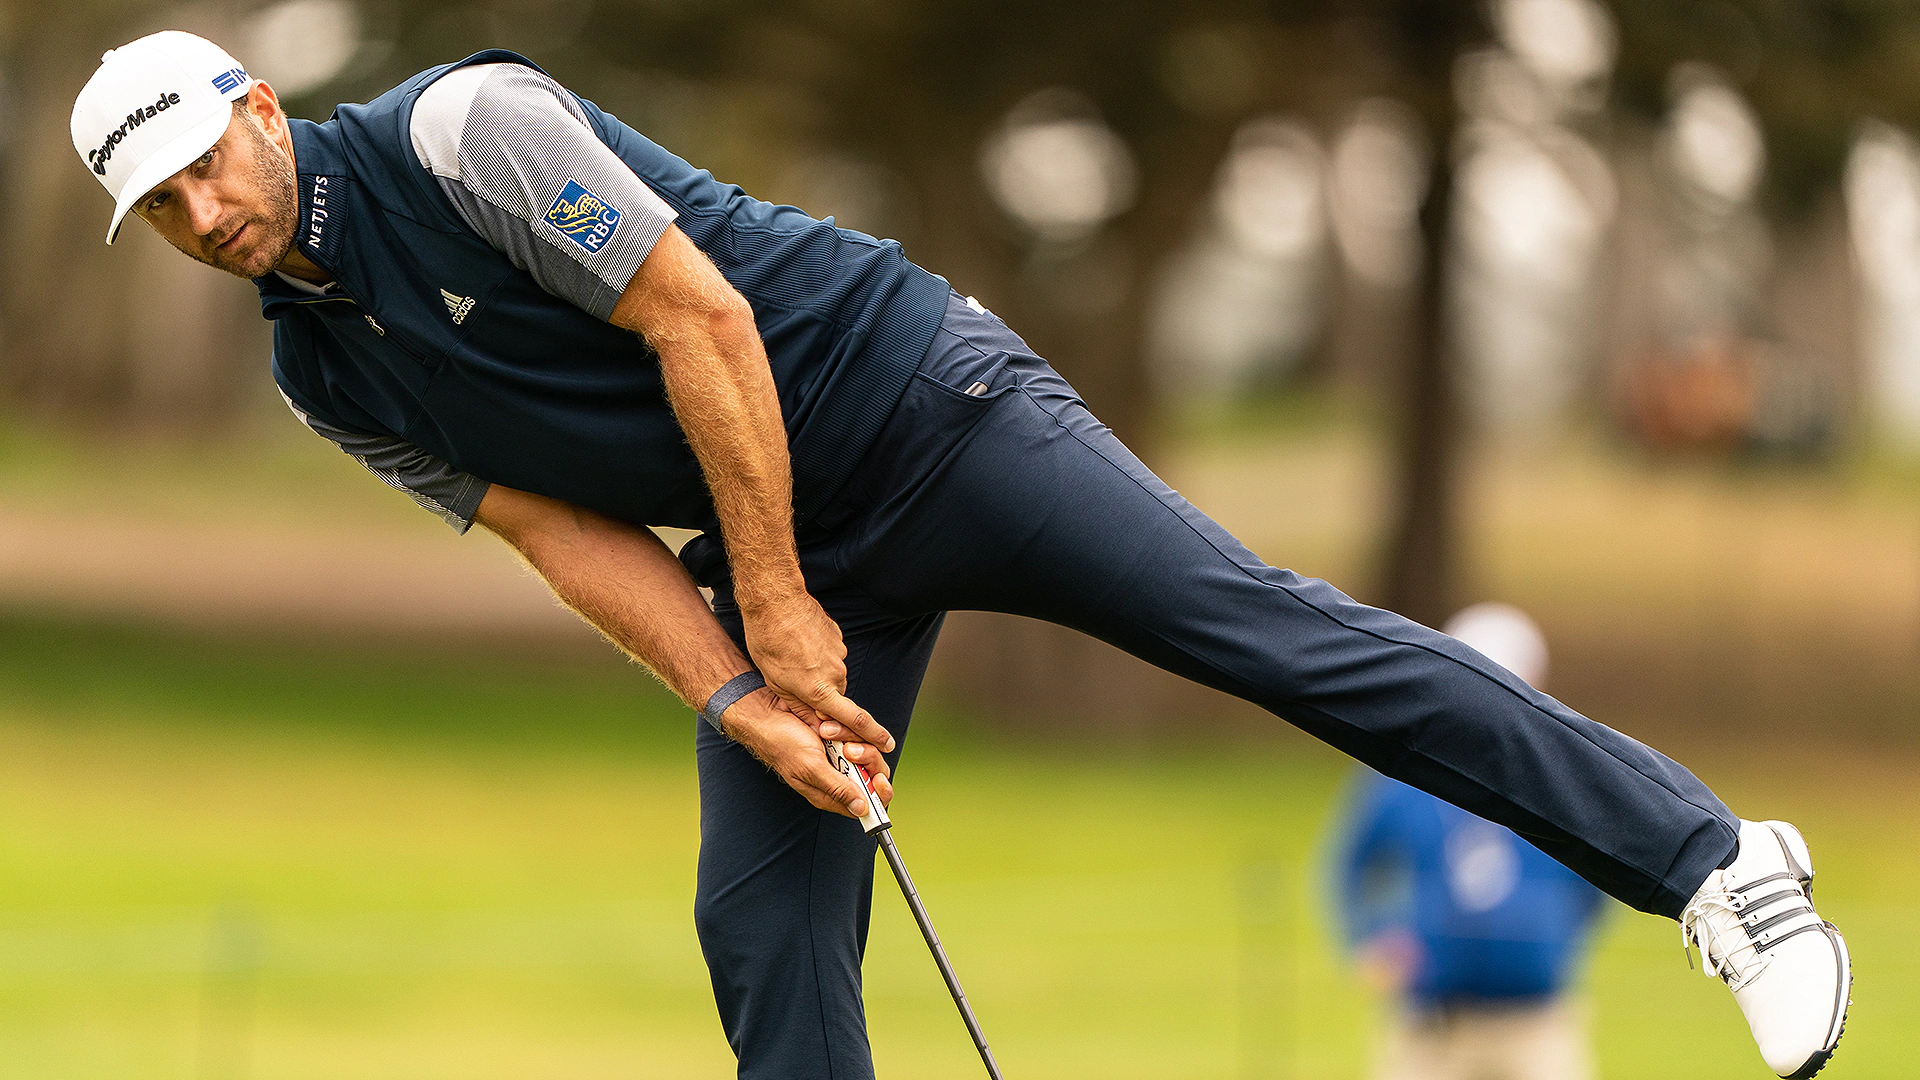 Dustin Johnson settles for second straight runner-up at 2020 PGA Championship